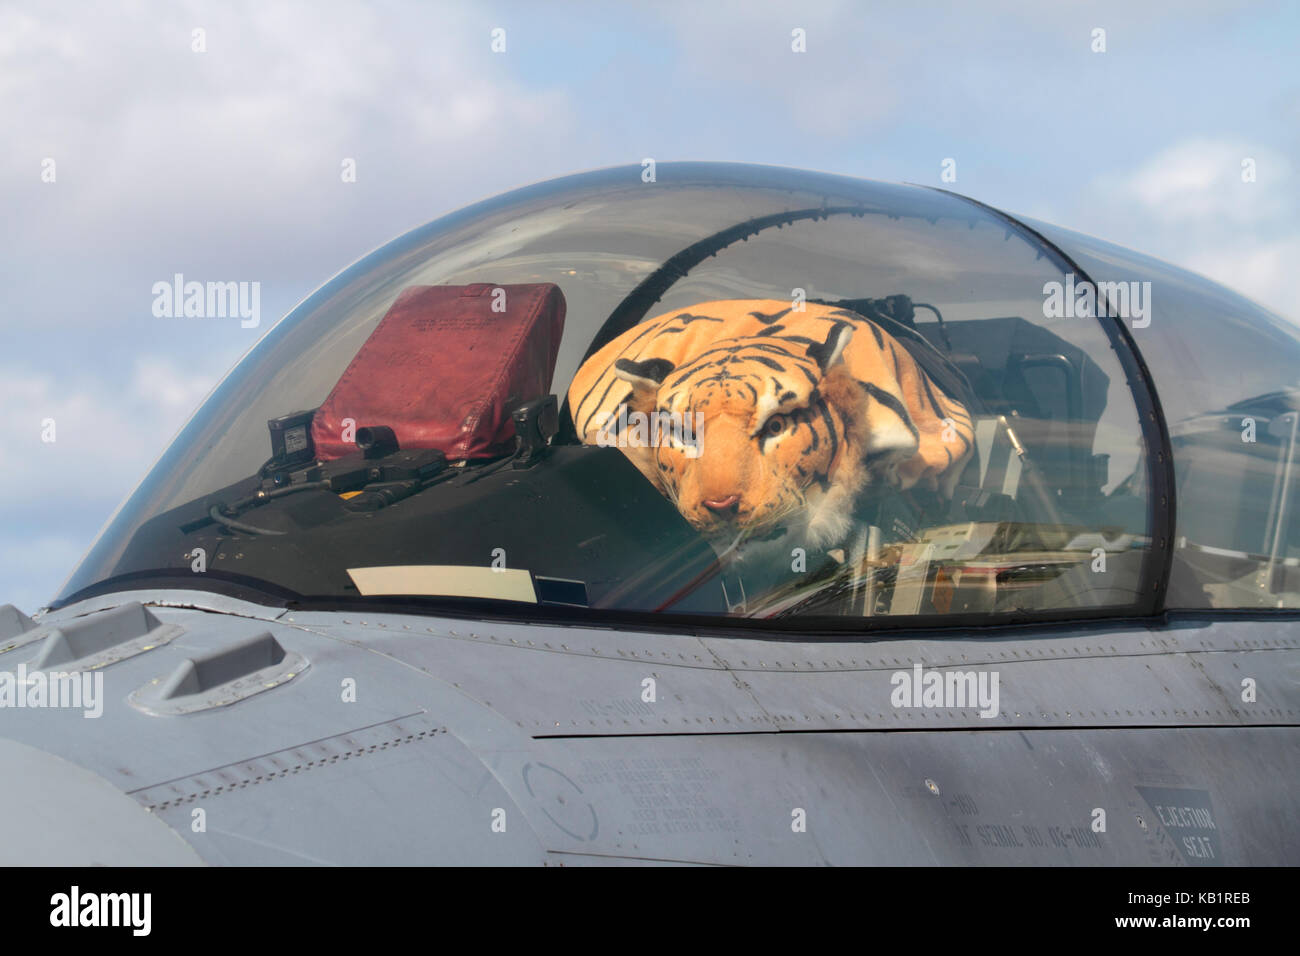 Polish Air Force F-16D avion de chasse à réaction cockpit avec peluche tigre sous couvert fermé Banque D'Images